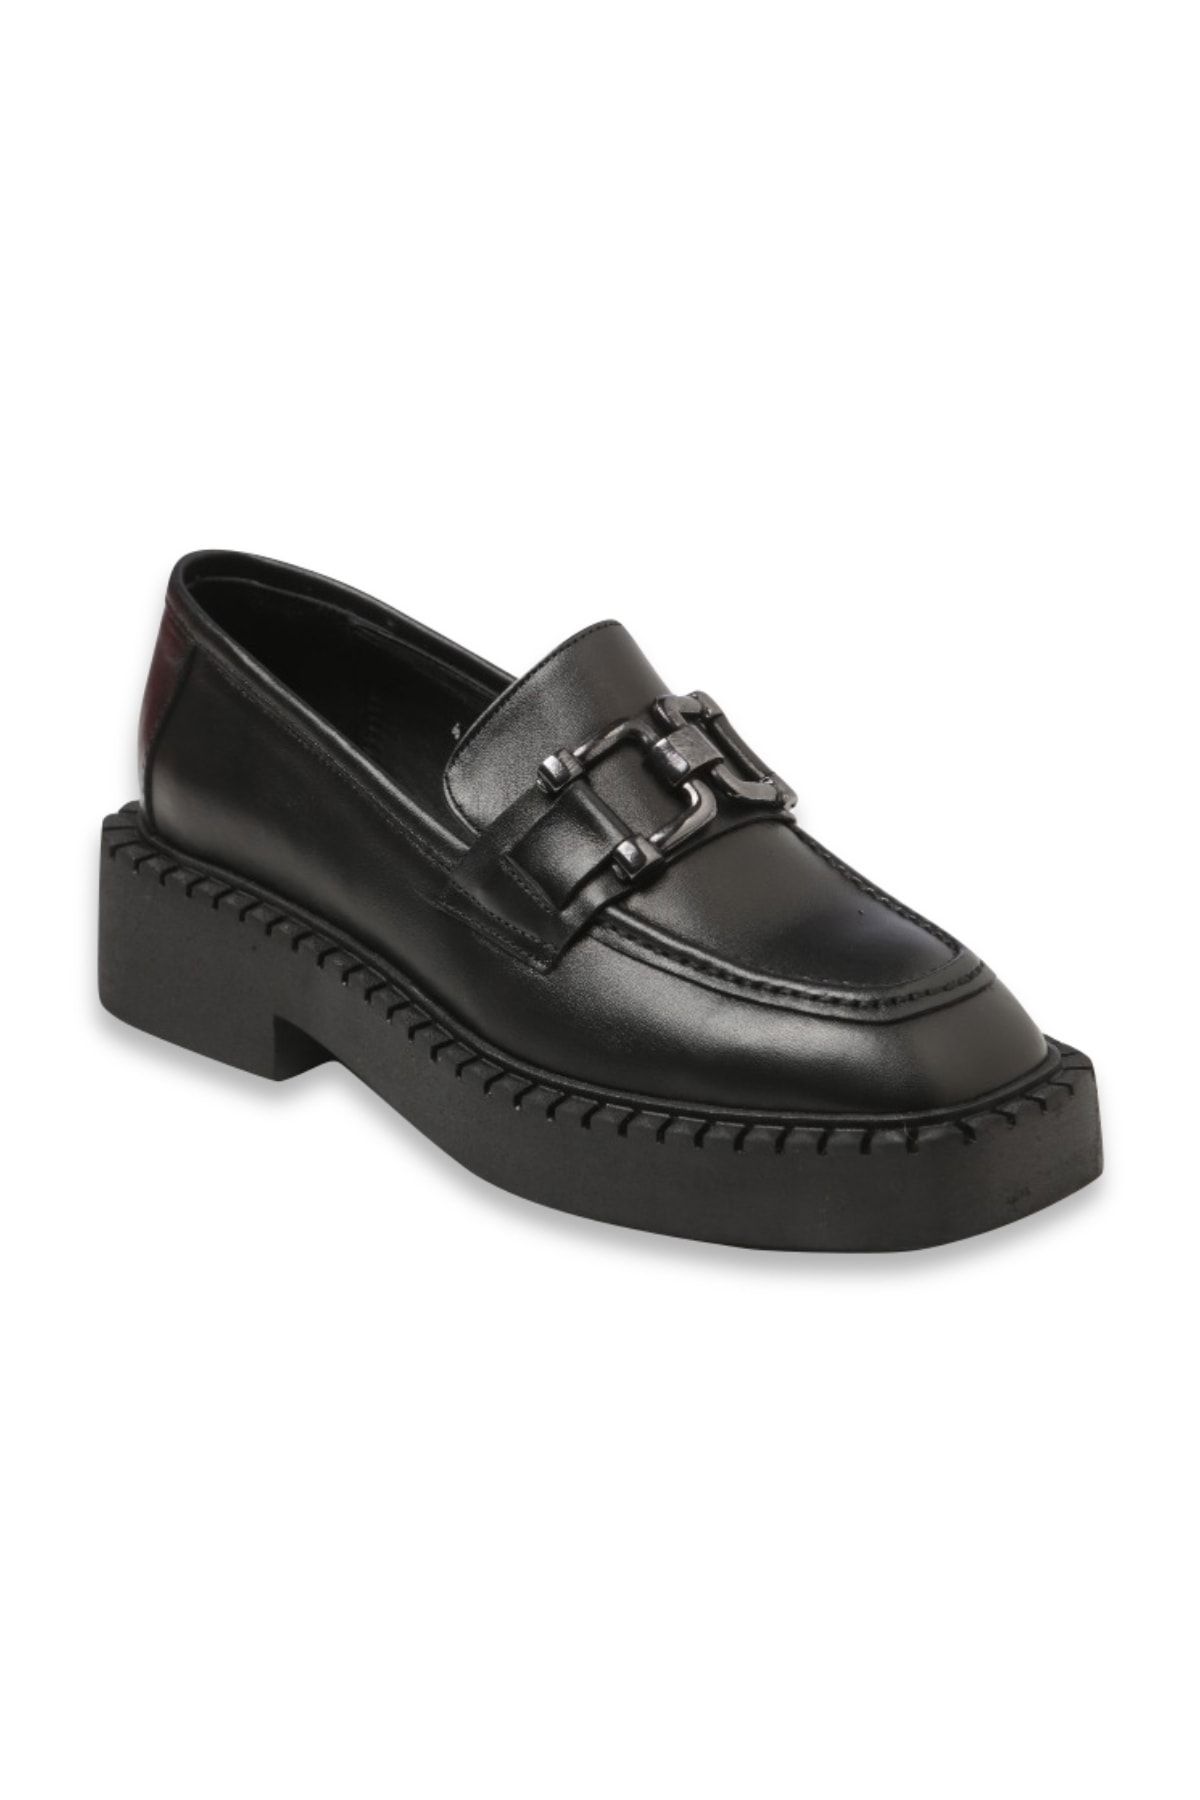 Giuseppe Mengoni Kadın Oxford/ayakkabı Po-1031-755 R-300 Siyah Deri